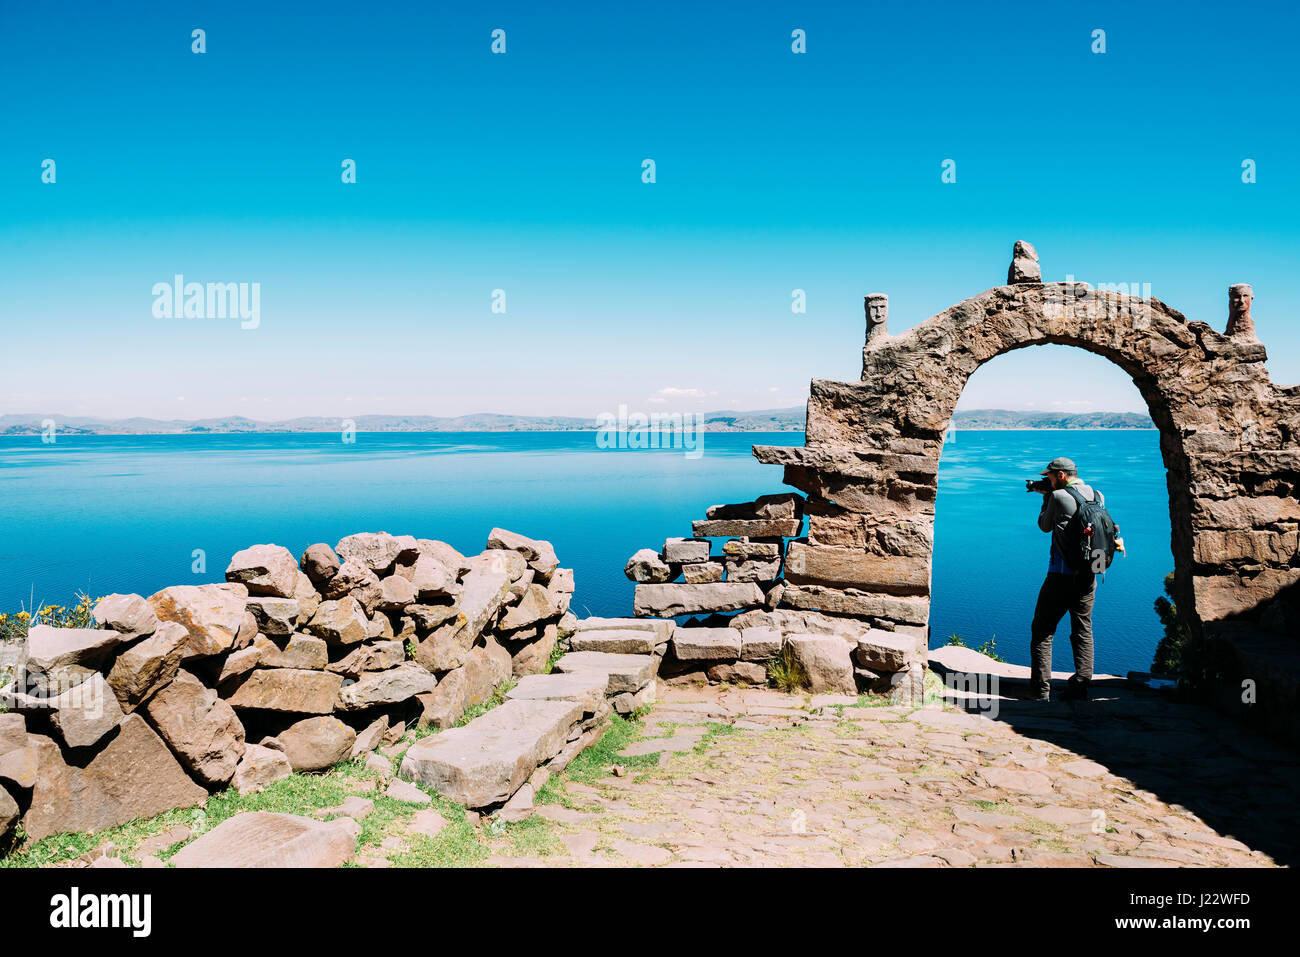 L'île de Taquile, lac Titicaca, au Pérou. Backpacker prendre des photos de la vue sur le lac Titicaca Banque D'Images